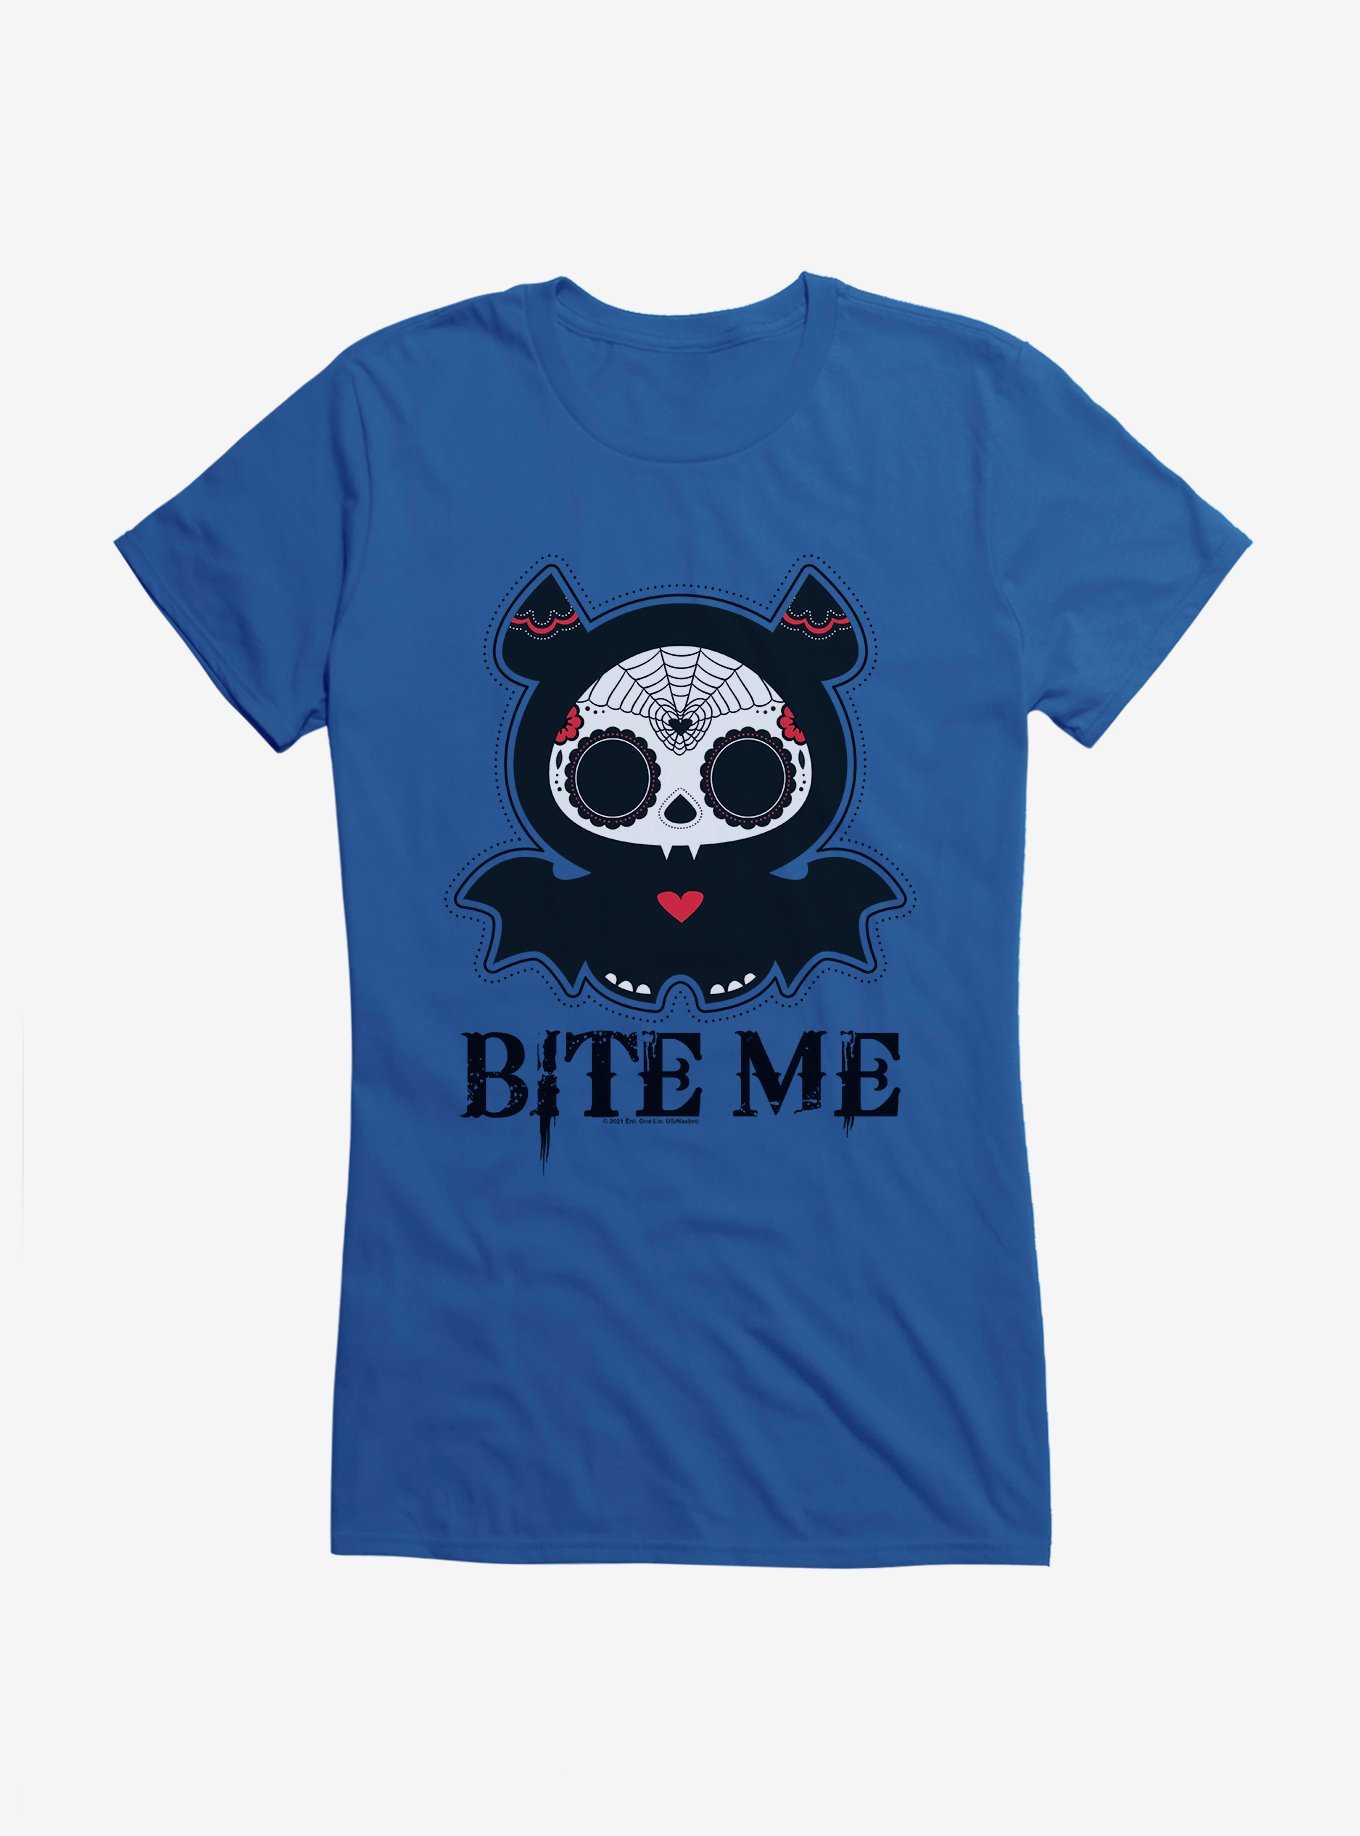 Skelanimals Bite Me Girls T-Shirt, , hi-res